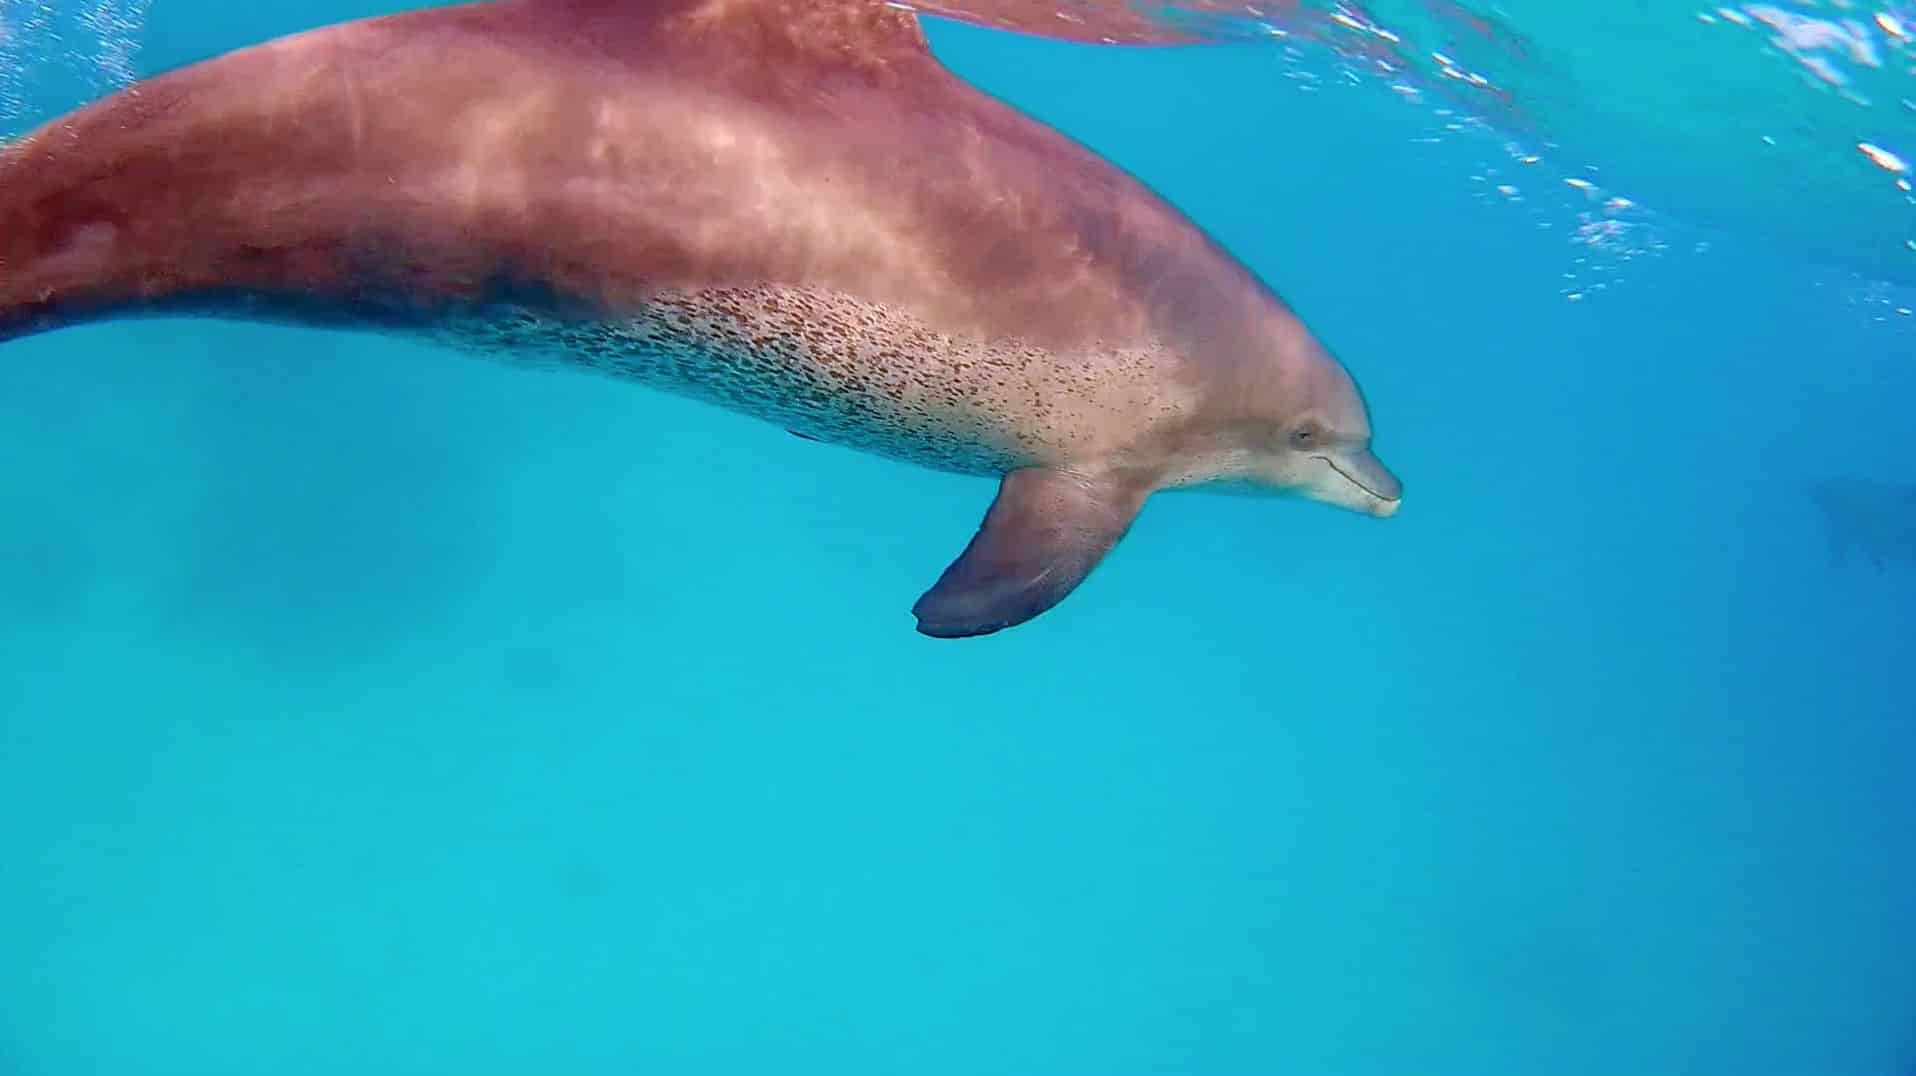 Nuotare con i delfini nel Mar Rosso è un'esperienza indimenticabile, purché si svolga in modo amichevole per gli animali. Foto: Sascha Tegtmeyer